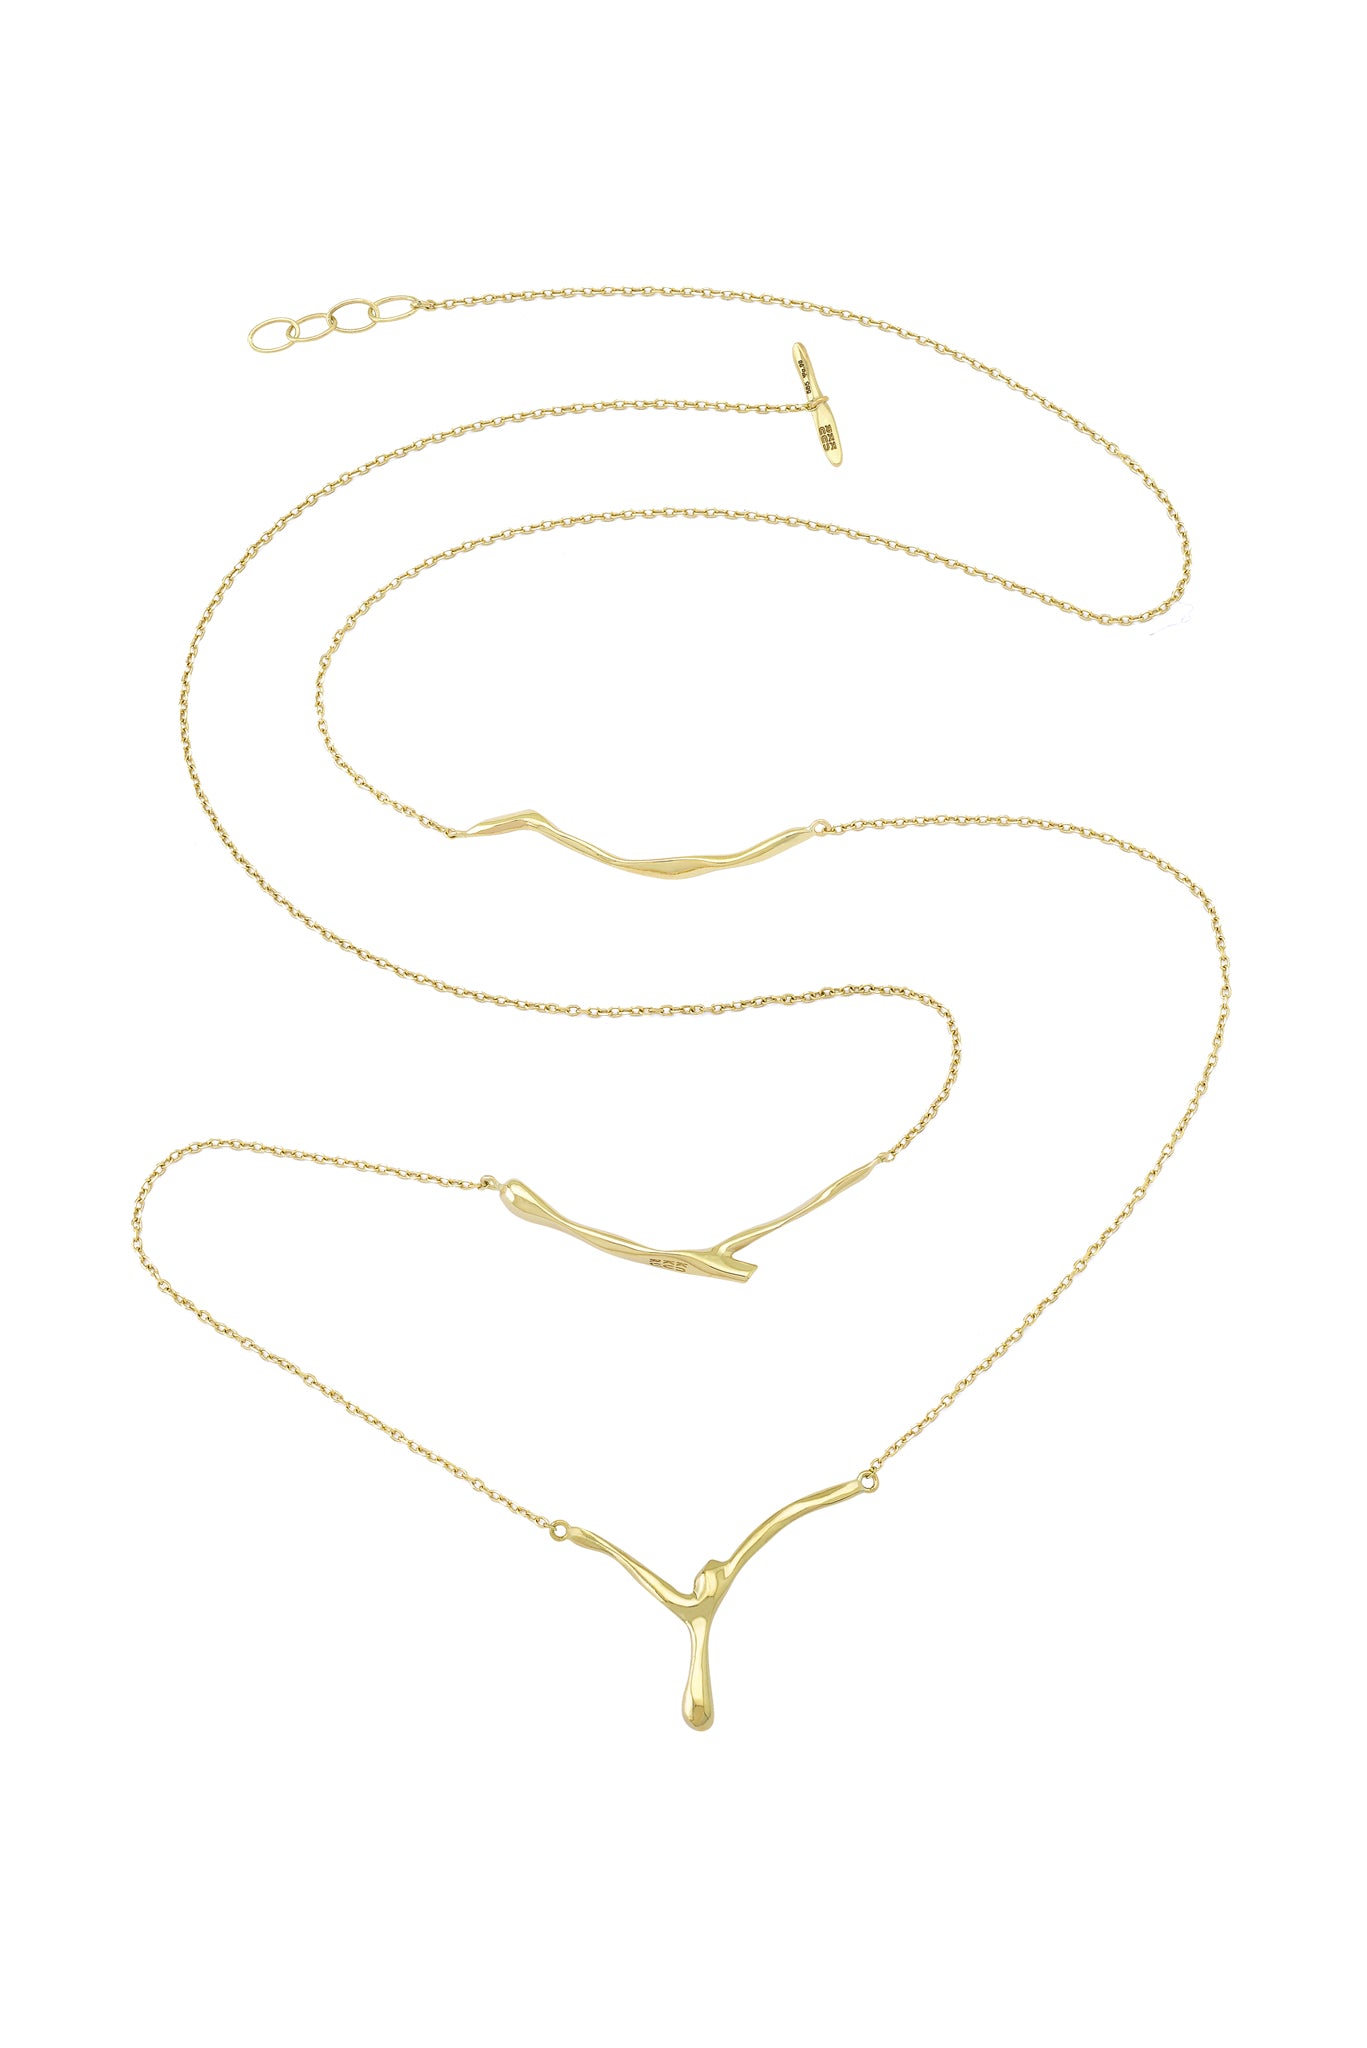 Riza Gold x 3 Necklace 80 cm